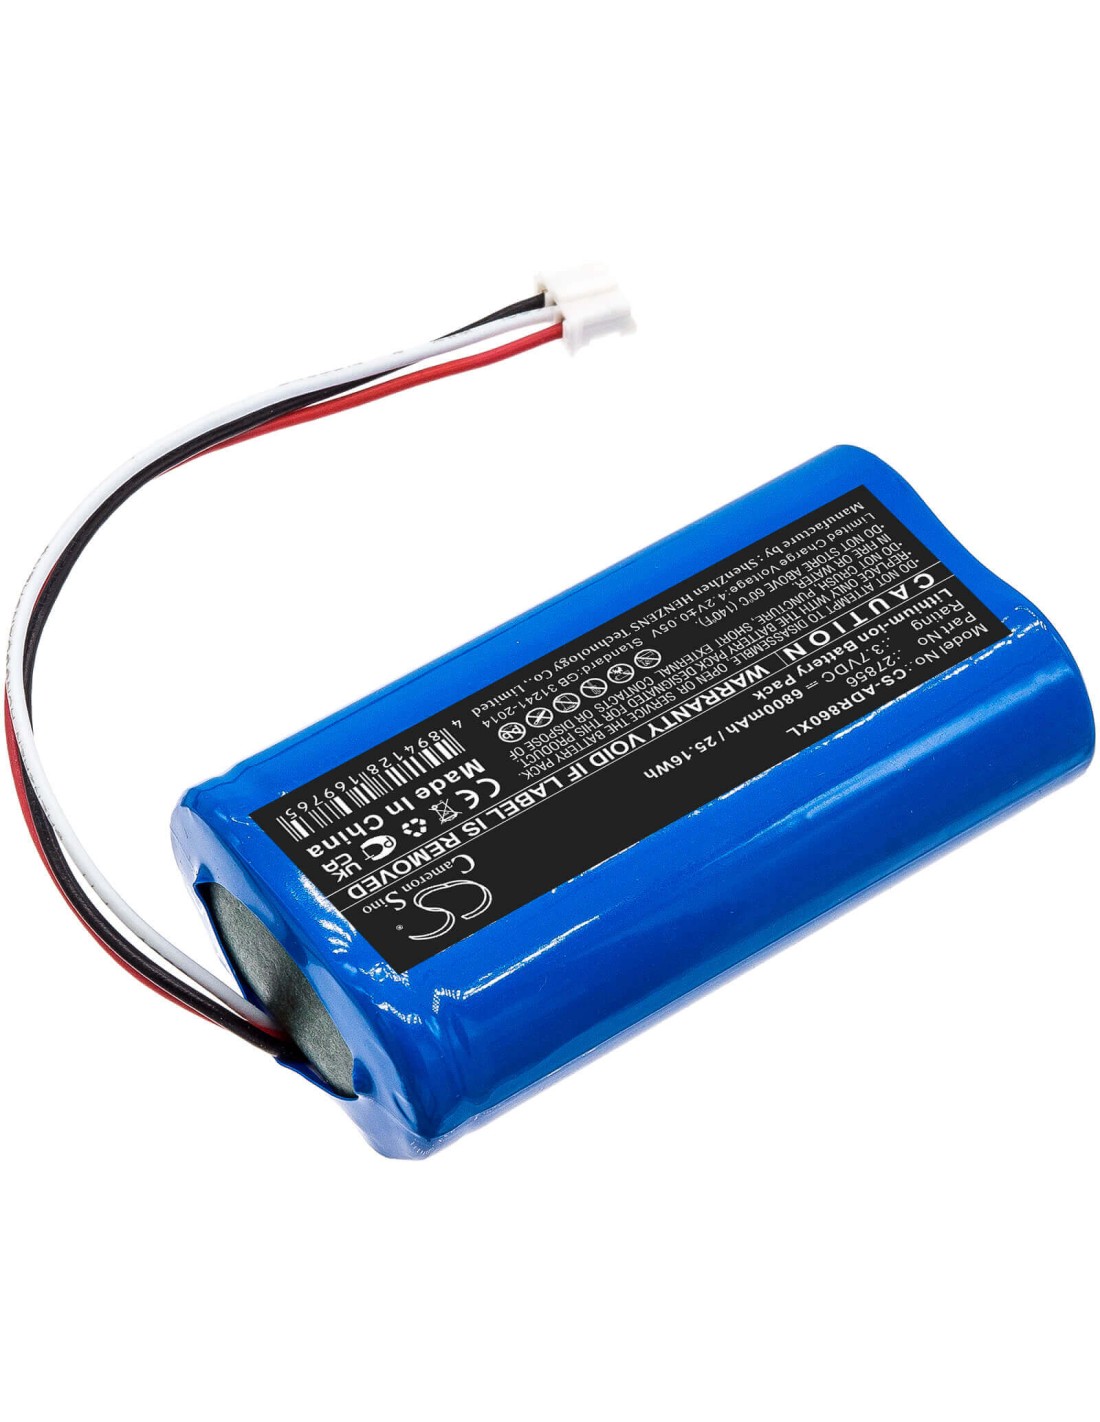 Battery for Albrecht, Dr 855, Dr 860, Dr855 3.7V, 6800mAh - 25.16Wh